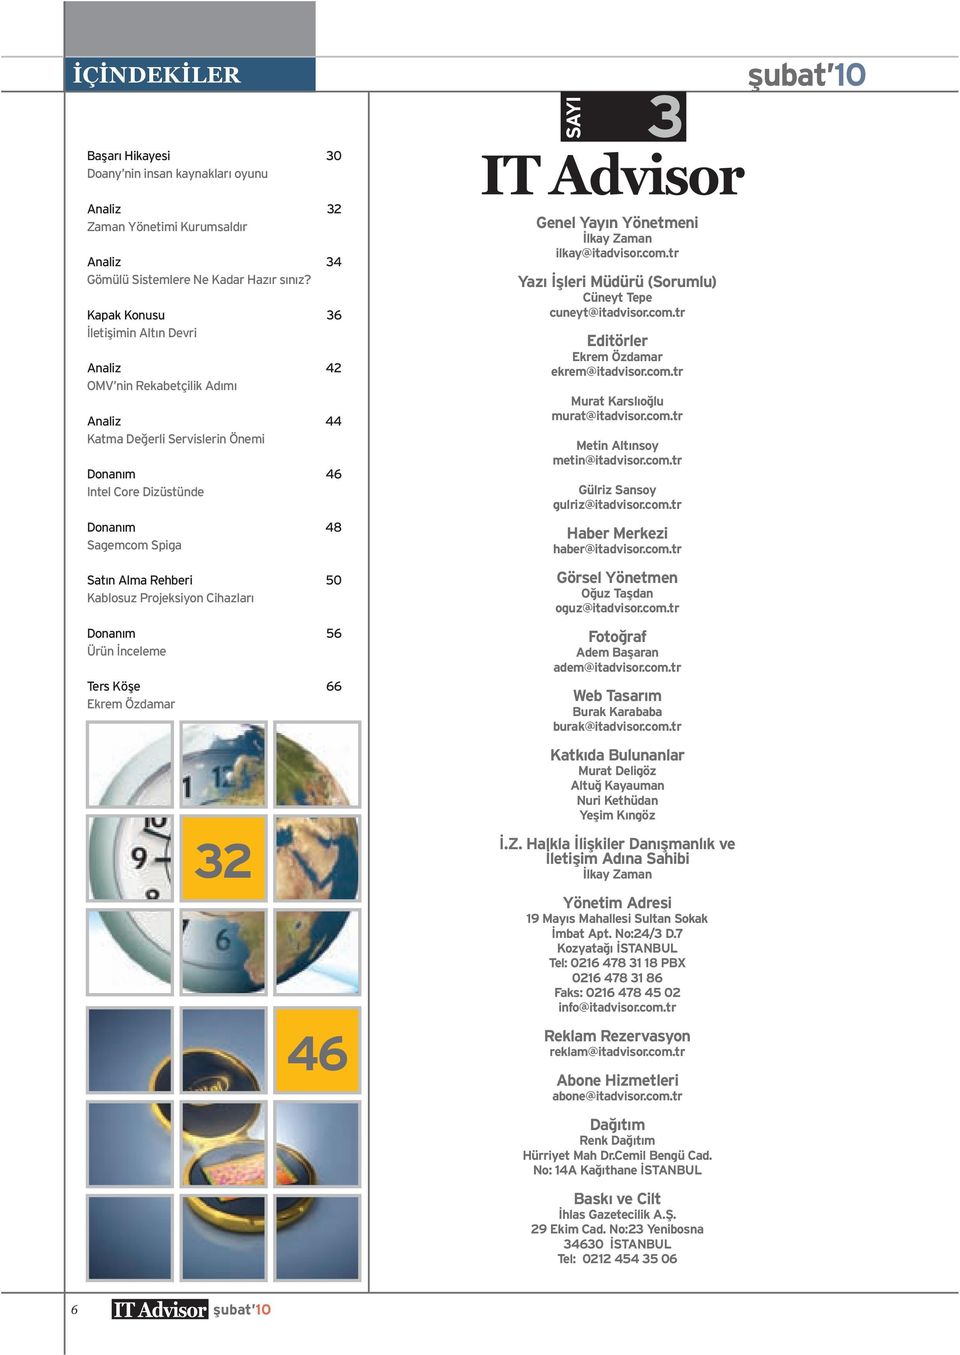 Kablosuz Projeksiyon Cihazları Donanım 56 Ürün İnceleme Ters Köşe 66 Ekrem Özdamar 32 46 Genel Yayın Yönetmeni İlkay Zaman ilkay@itadvisor.com.